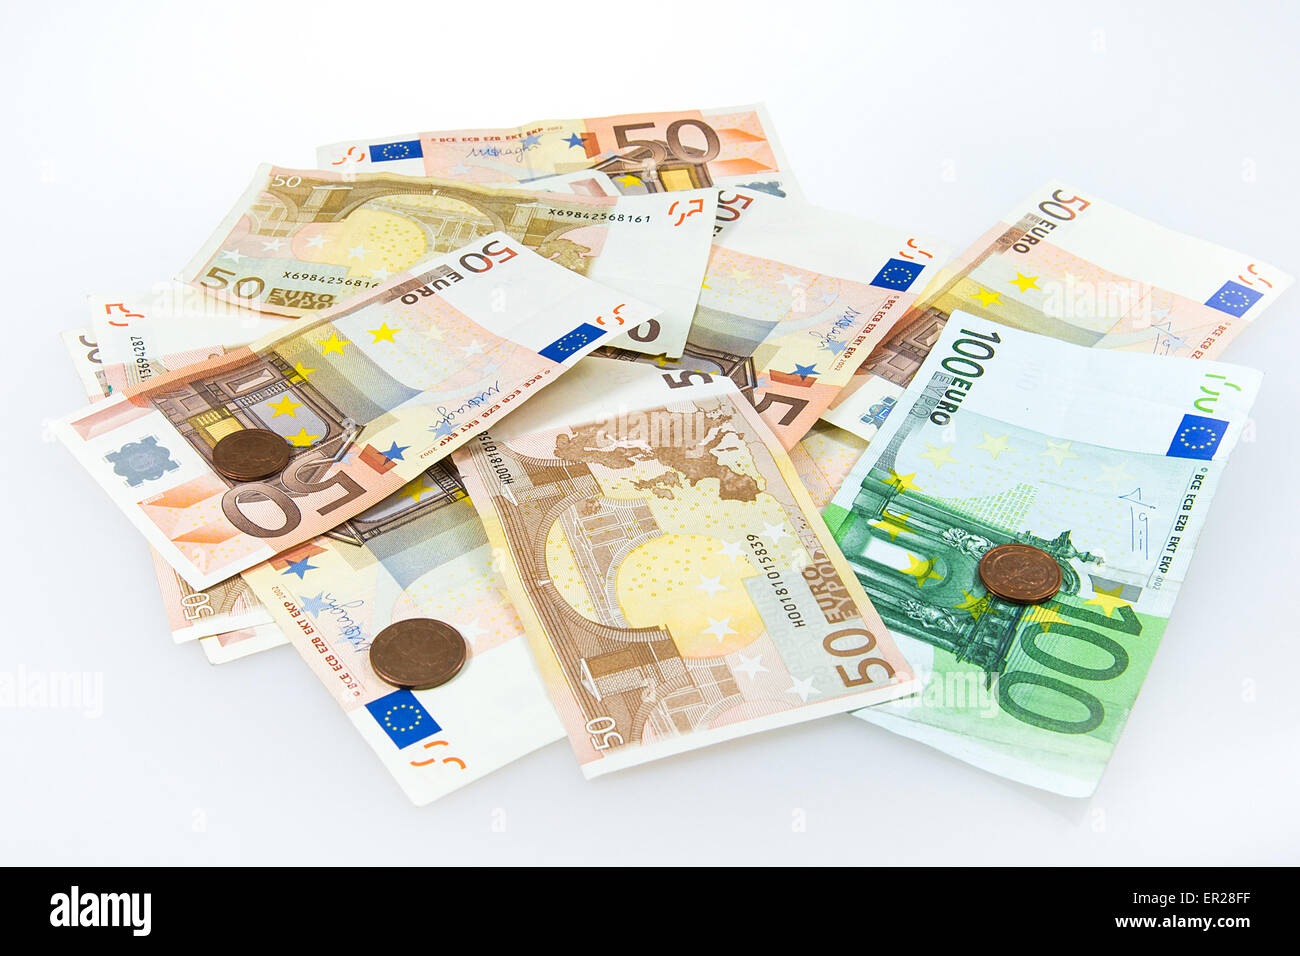 Euro Geld auf dem weißen Tisch zu legen. Hochauflösend mit einer Vollformat-Kamera aufgenommenes Foto. Stockfoto